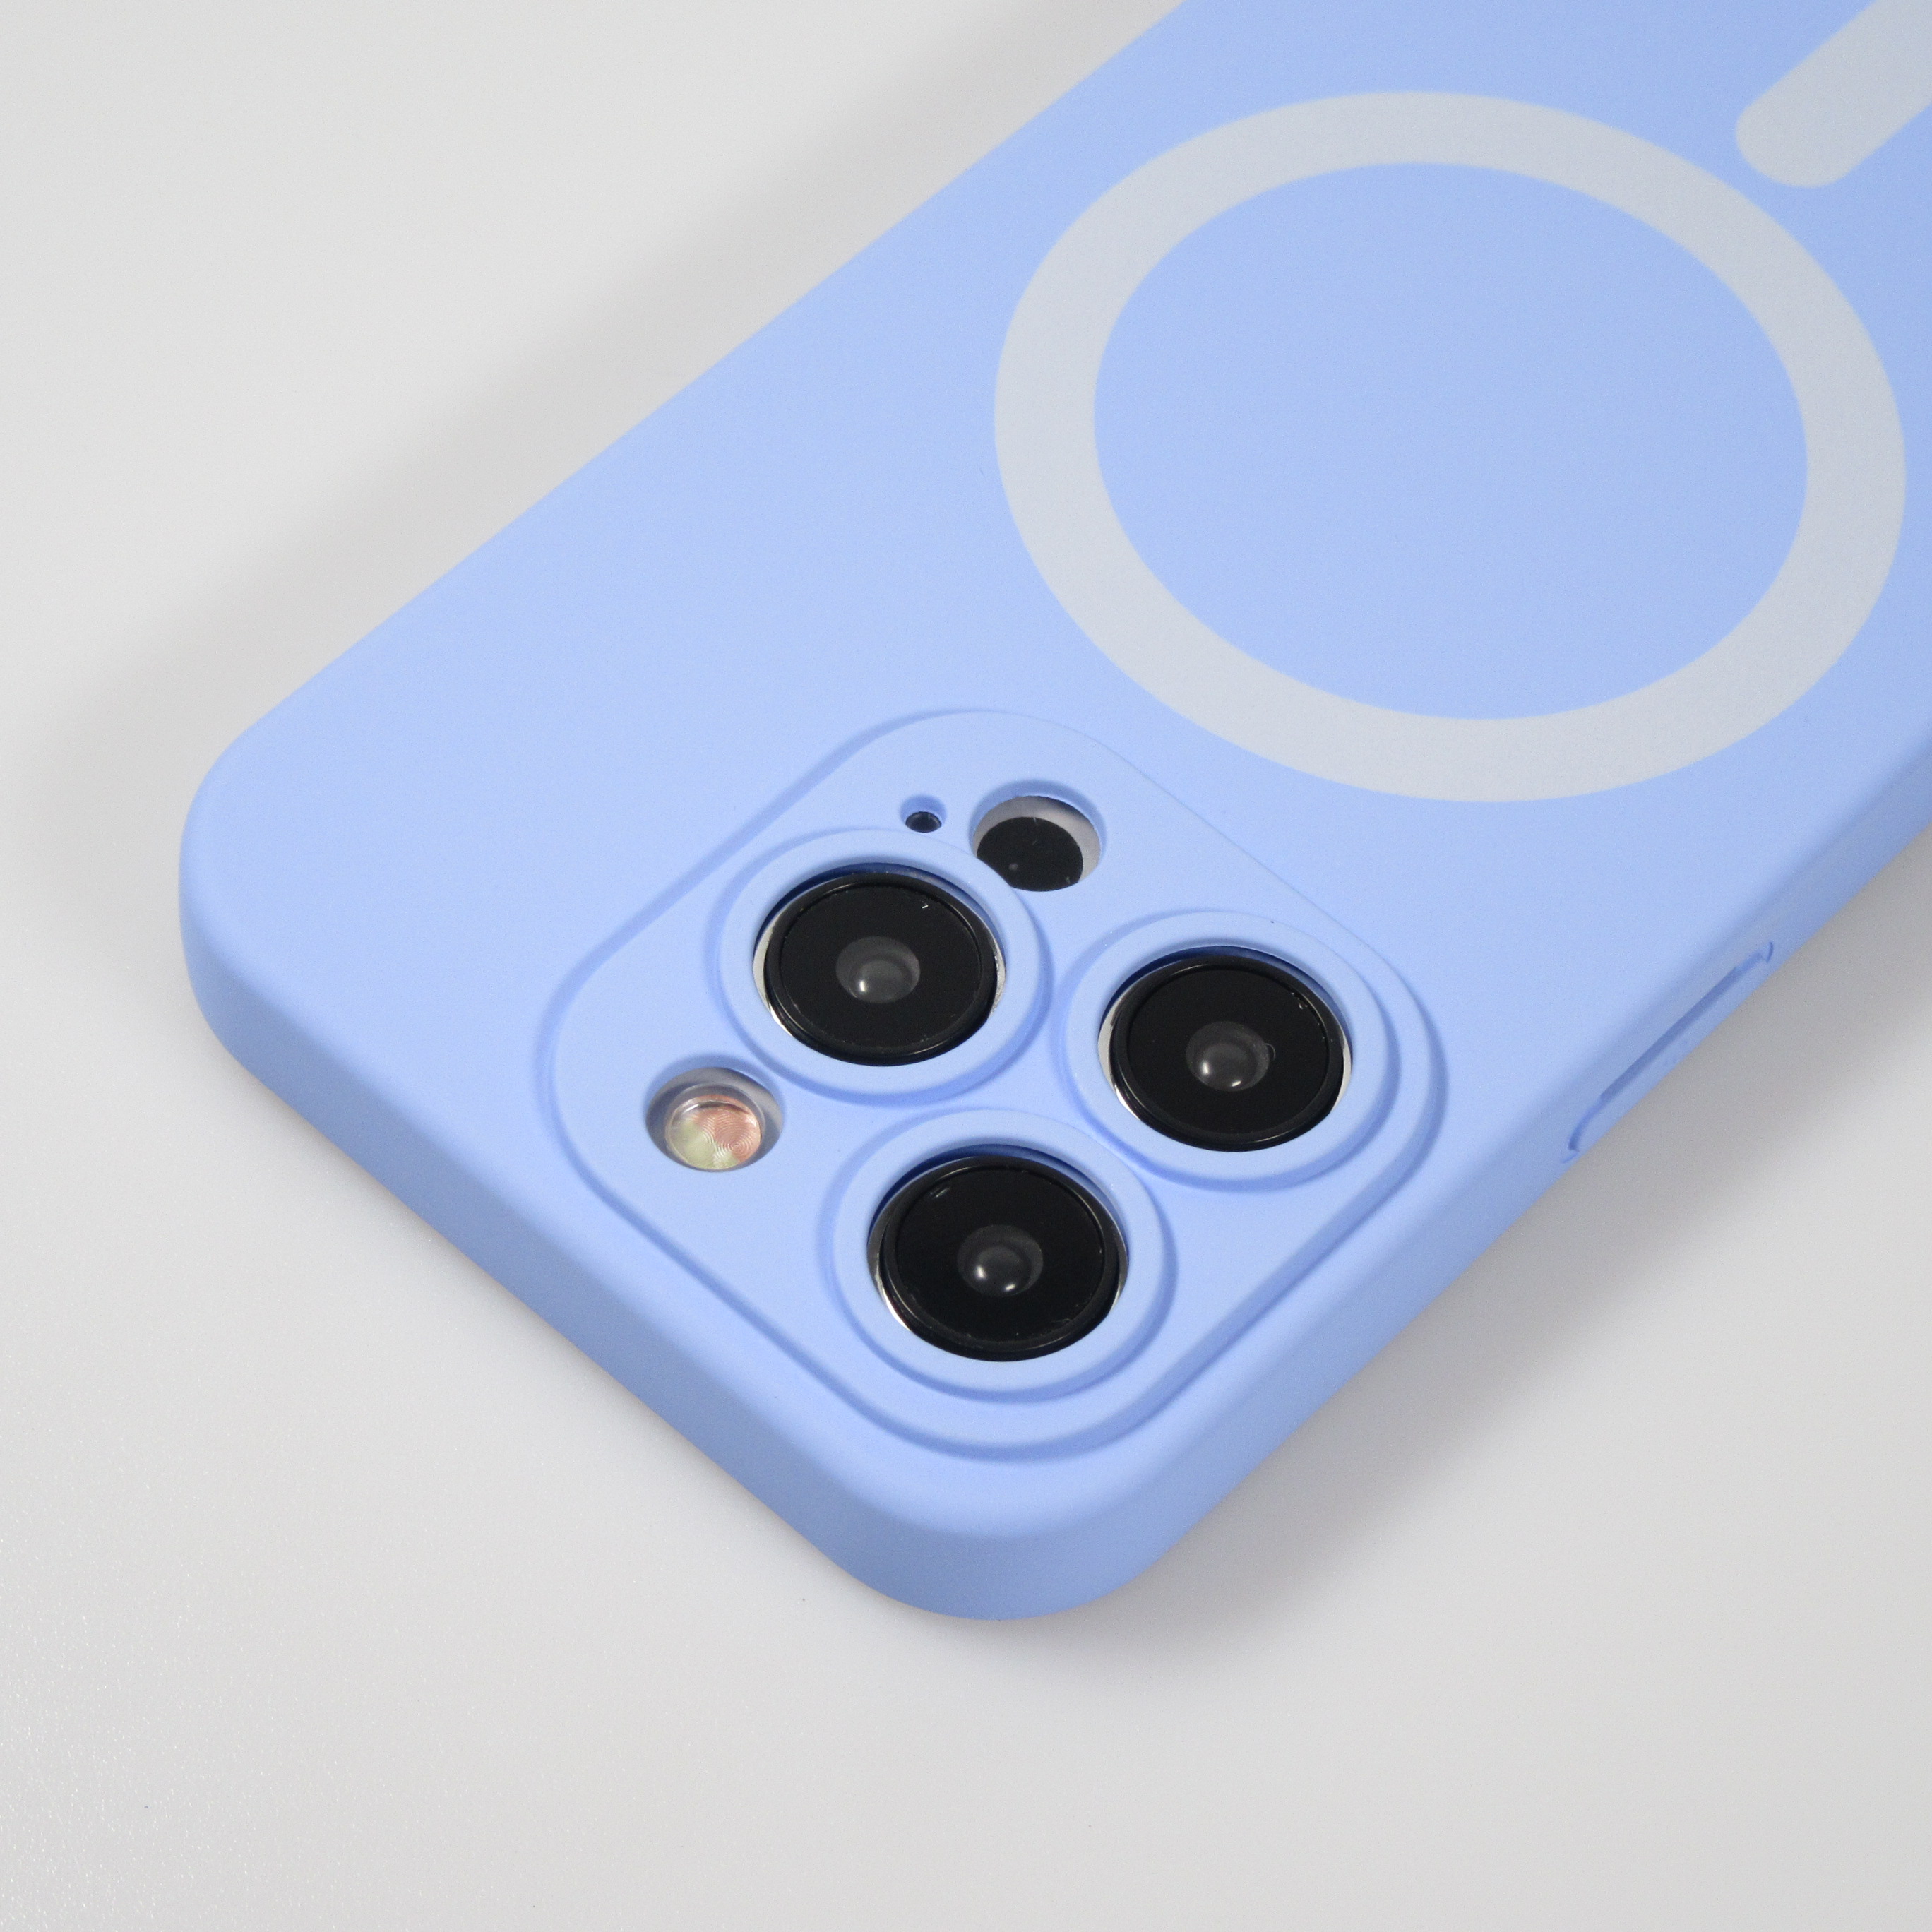 Apple Coque en silicone avec MagSafe pour iPhone 13 - Bleu clair